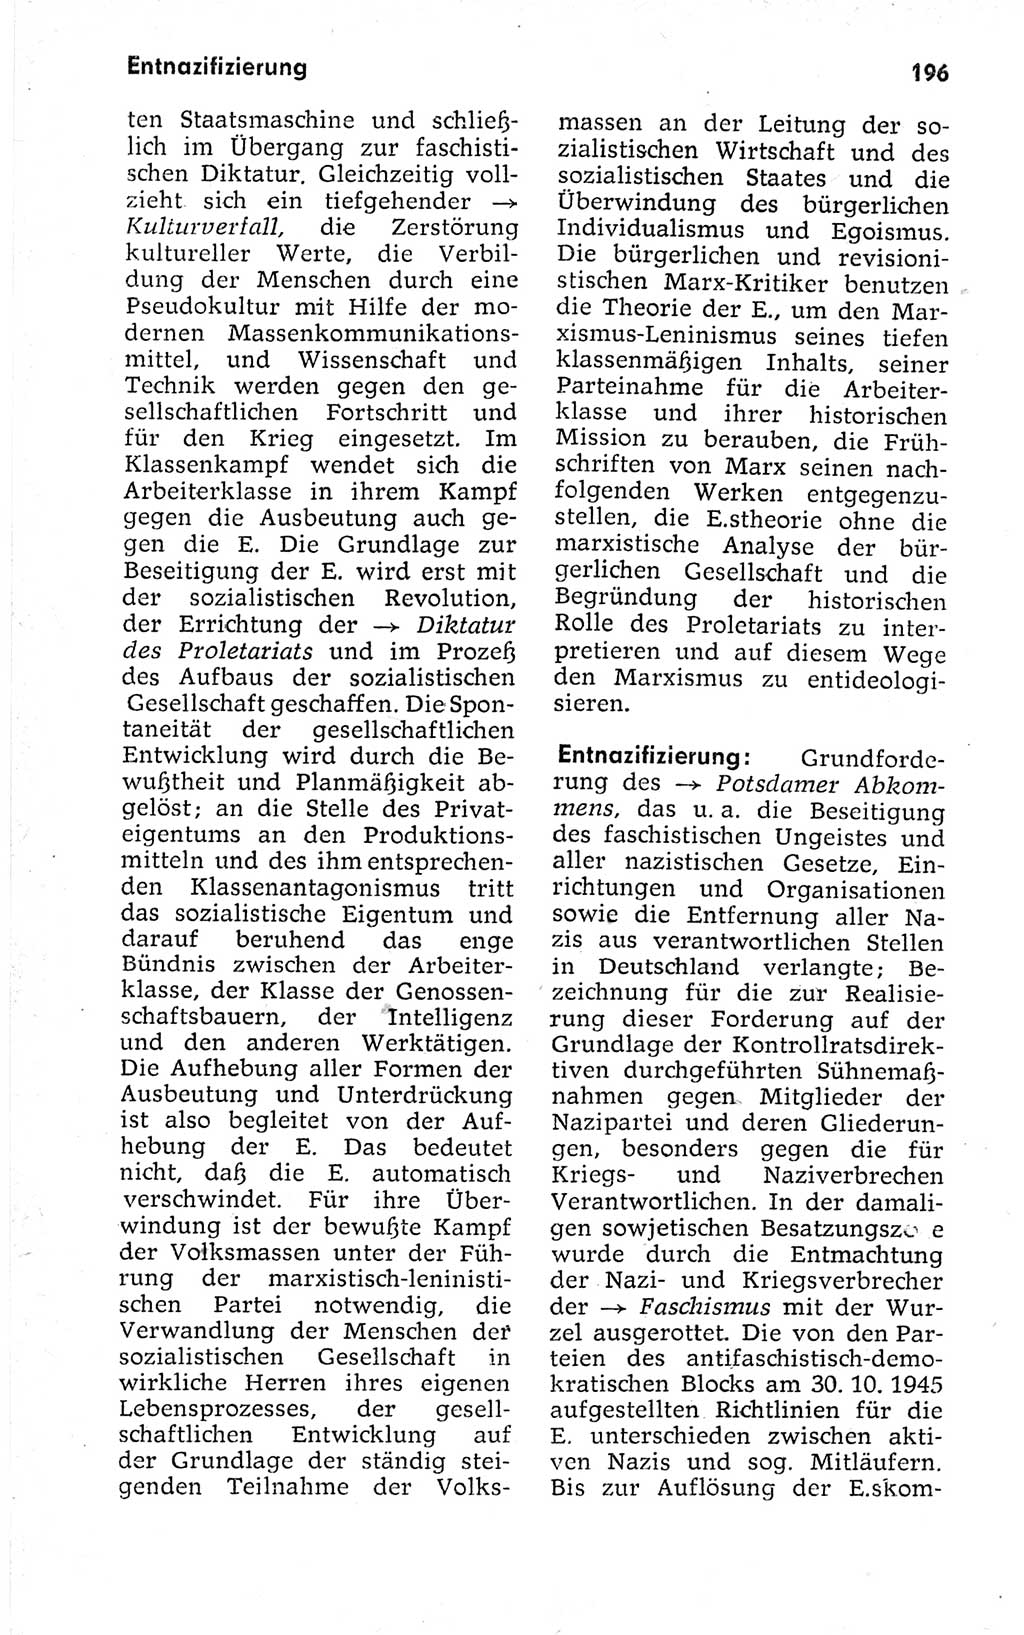 Kleines politisches Wörterbuch [Deutsche Demokratische Republik (DDR)] 1973, Seite 196 (Kl. pol. Wb. DDR 1973, S. 196)